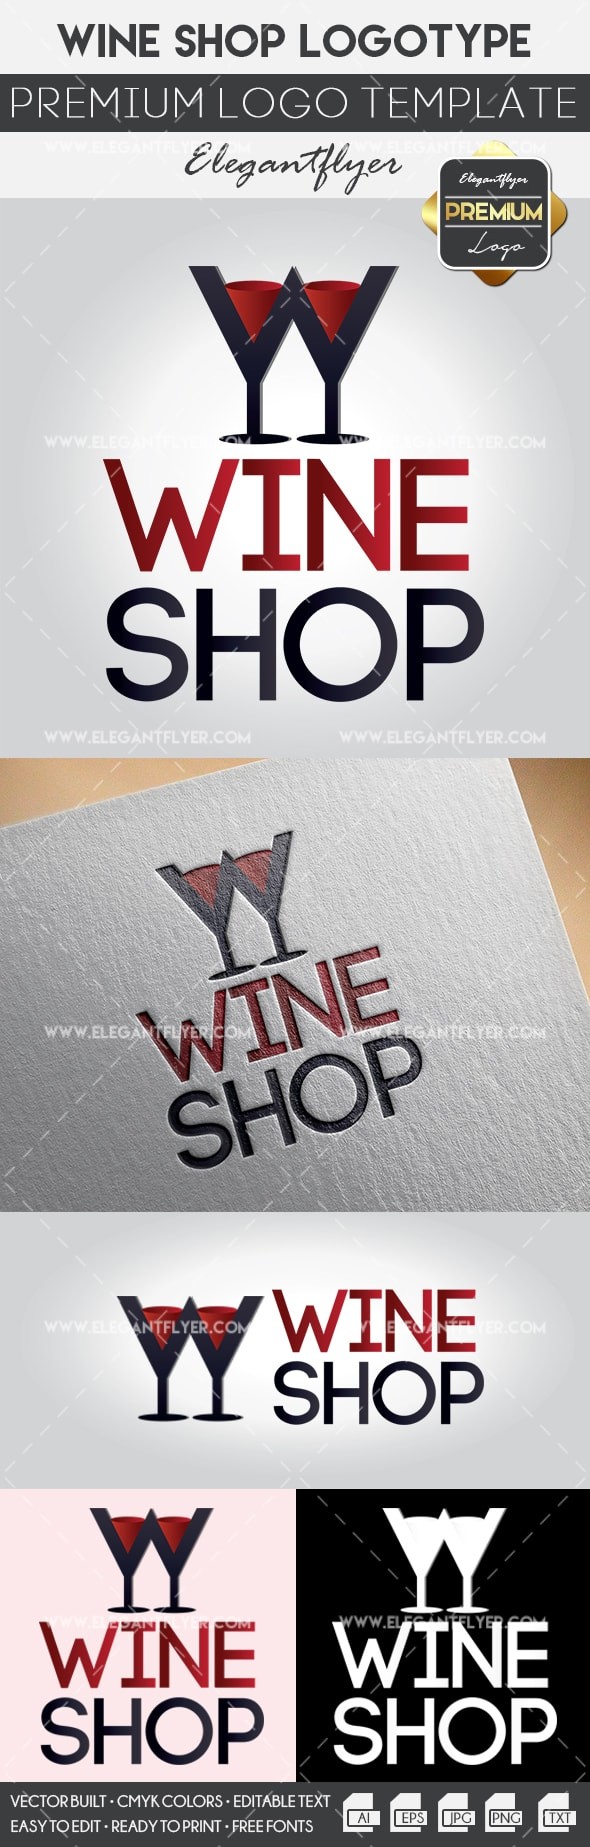 Wine Shop by ElegantFlyer